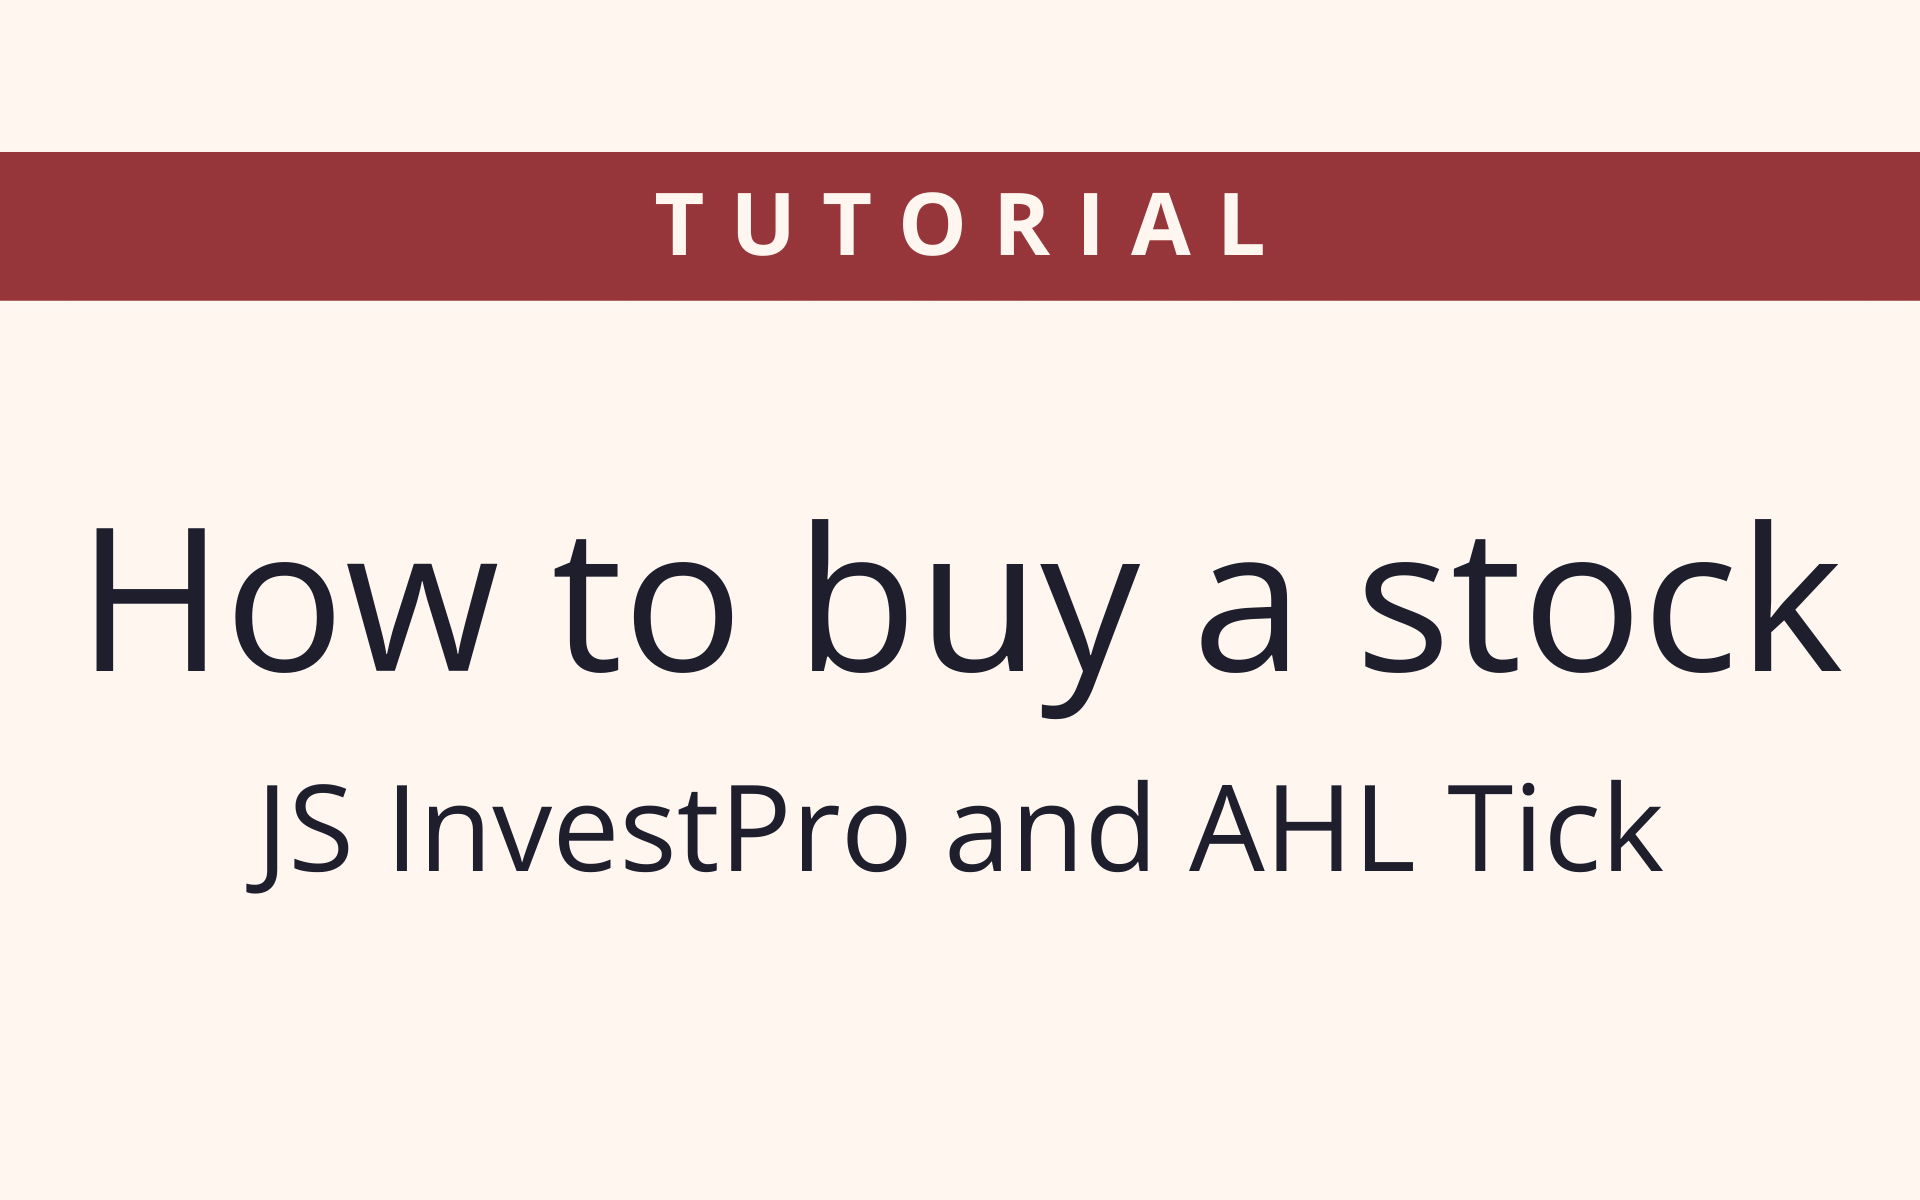 How to buy - Tutorials